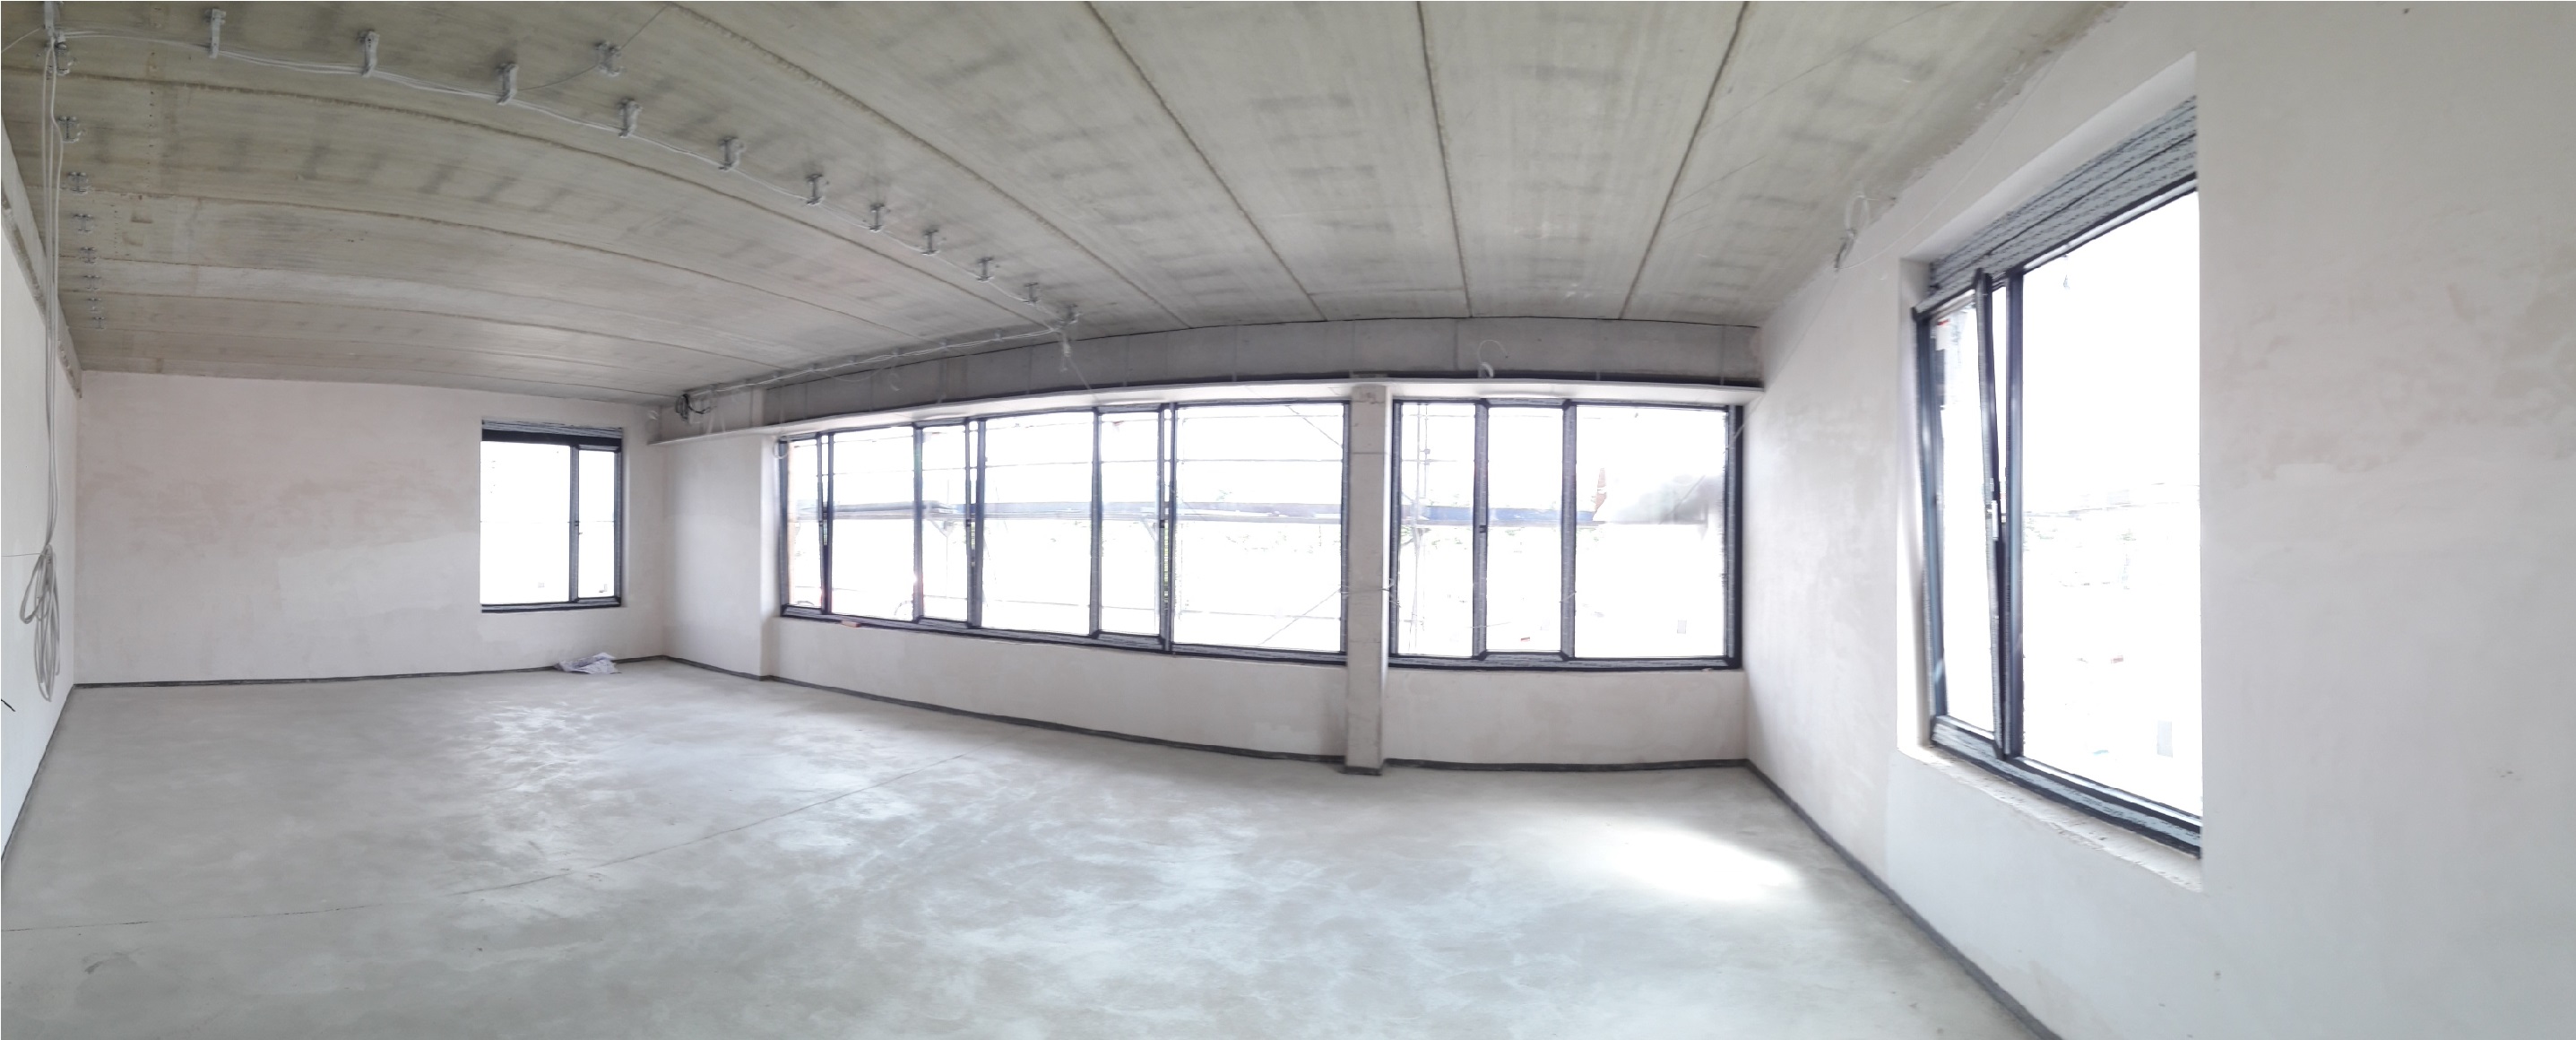 Der Neubau:: Auch der Fußboden ist eingebracht und beginnt zu trocknen © Karsten Dahmer